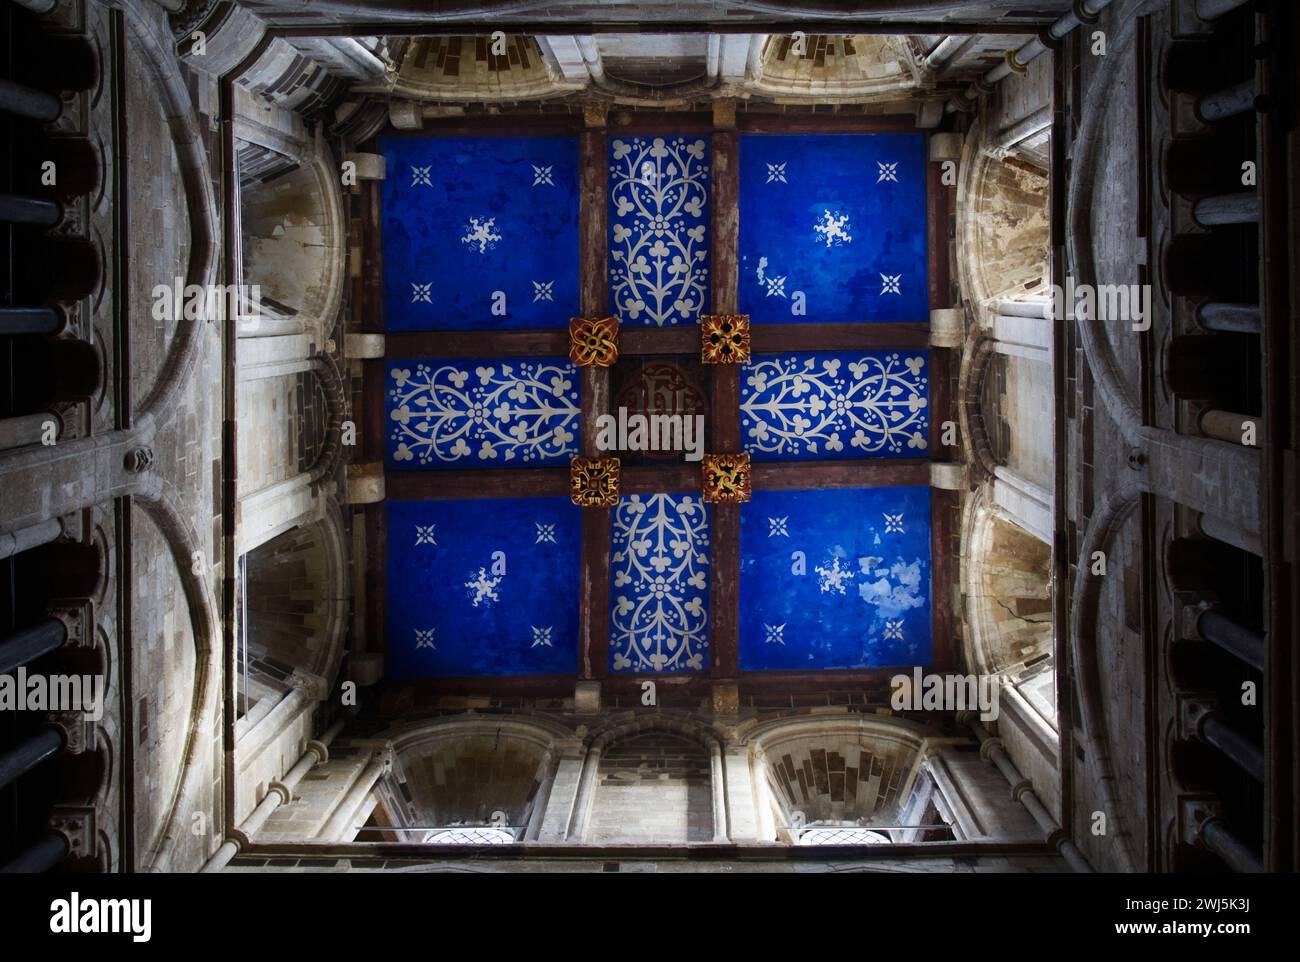 Hell bemalte, verzierte, blaue mittelalterliche Decke des Norman Architecture Central Tower of Wimborne Minster Parish Church, Wimborne, Dorset, Großbritannien Stockfoto